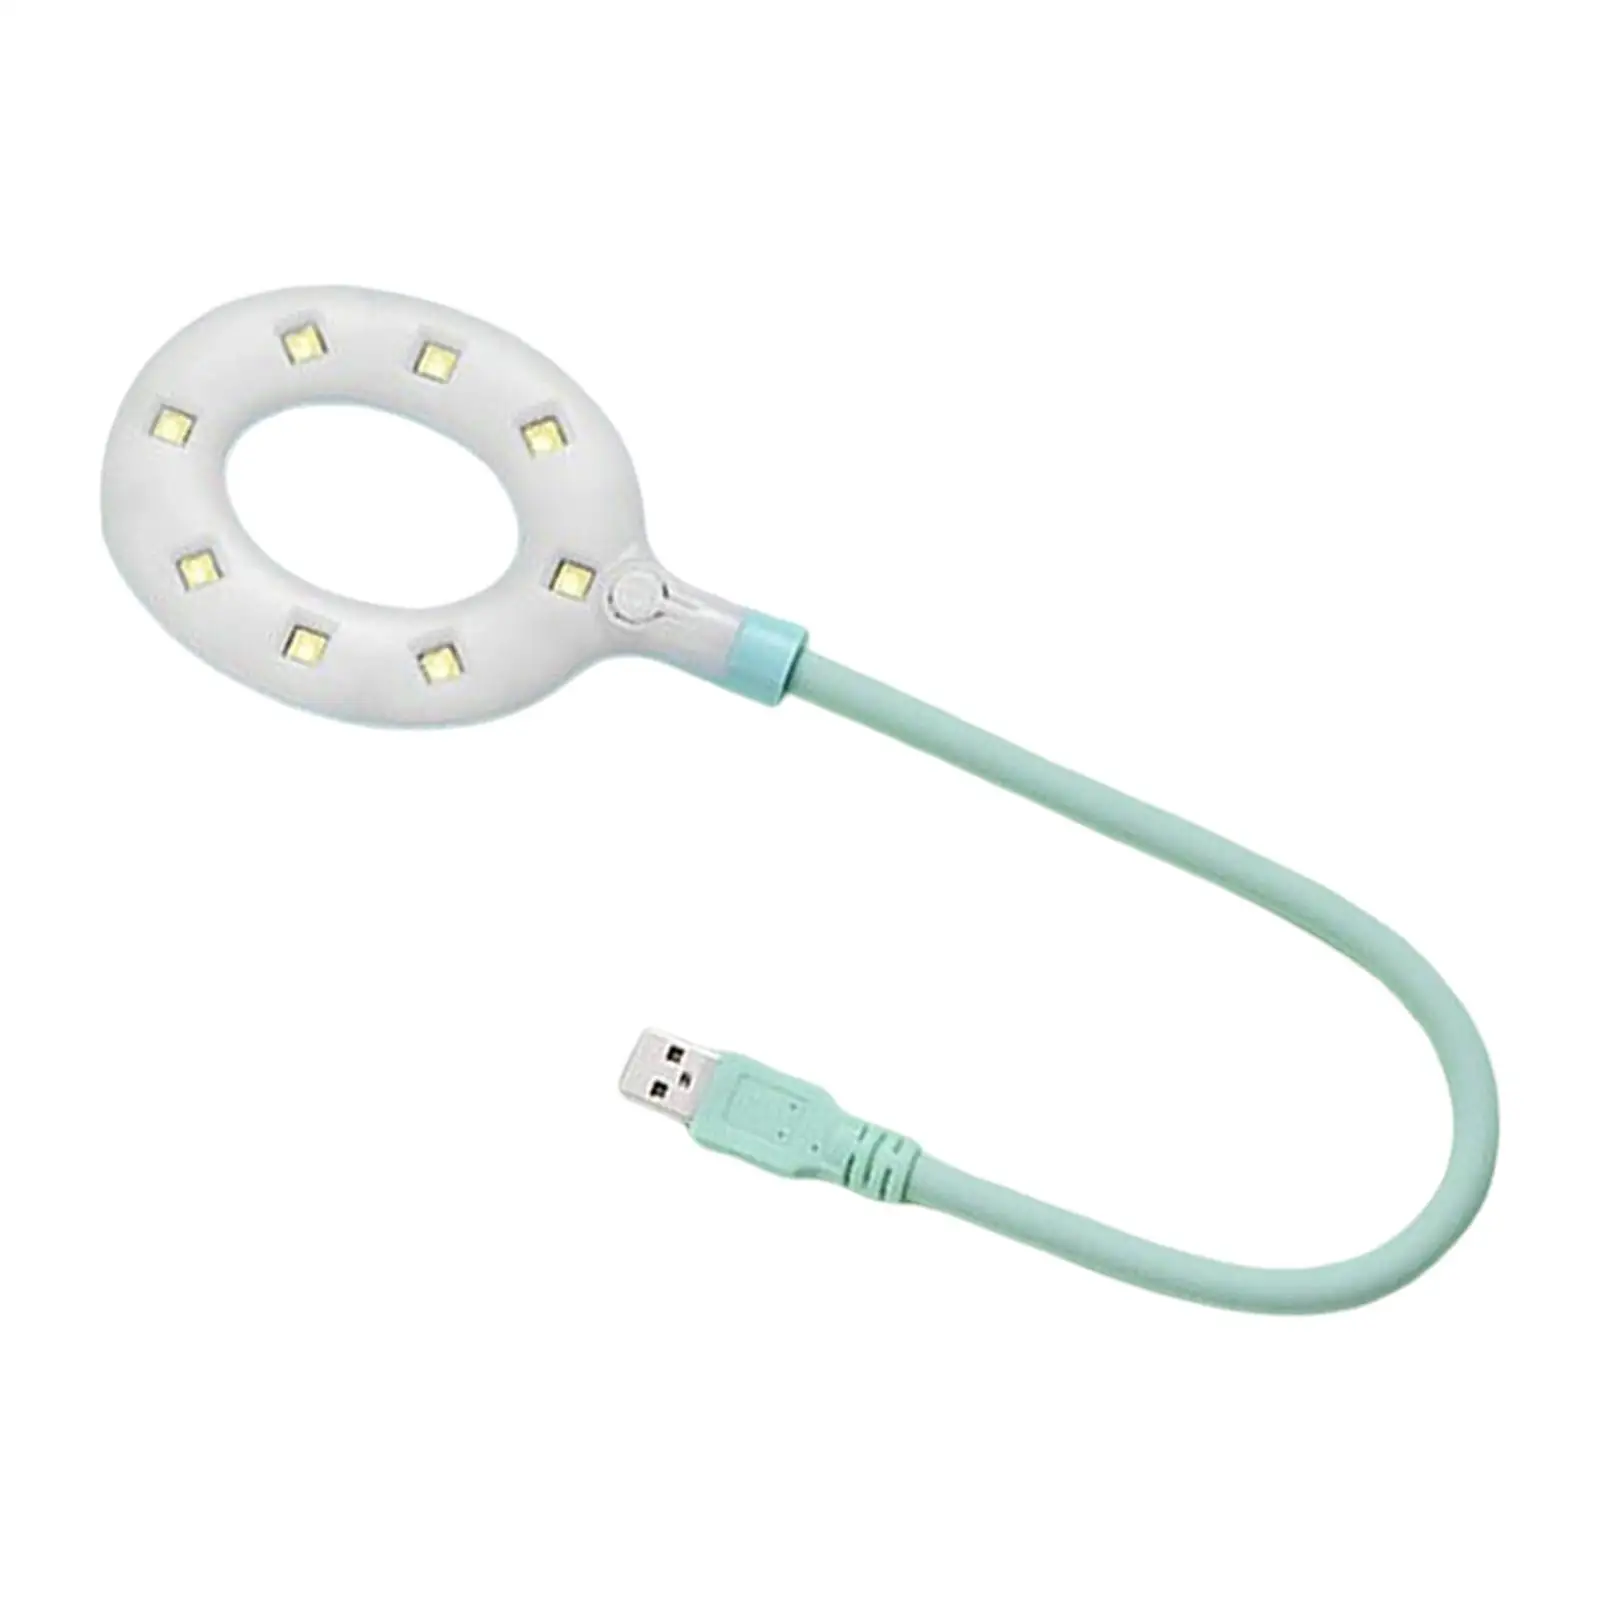  LED Nail er Portable Bendable USB Mini  Nail Lamp for Salon Tool